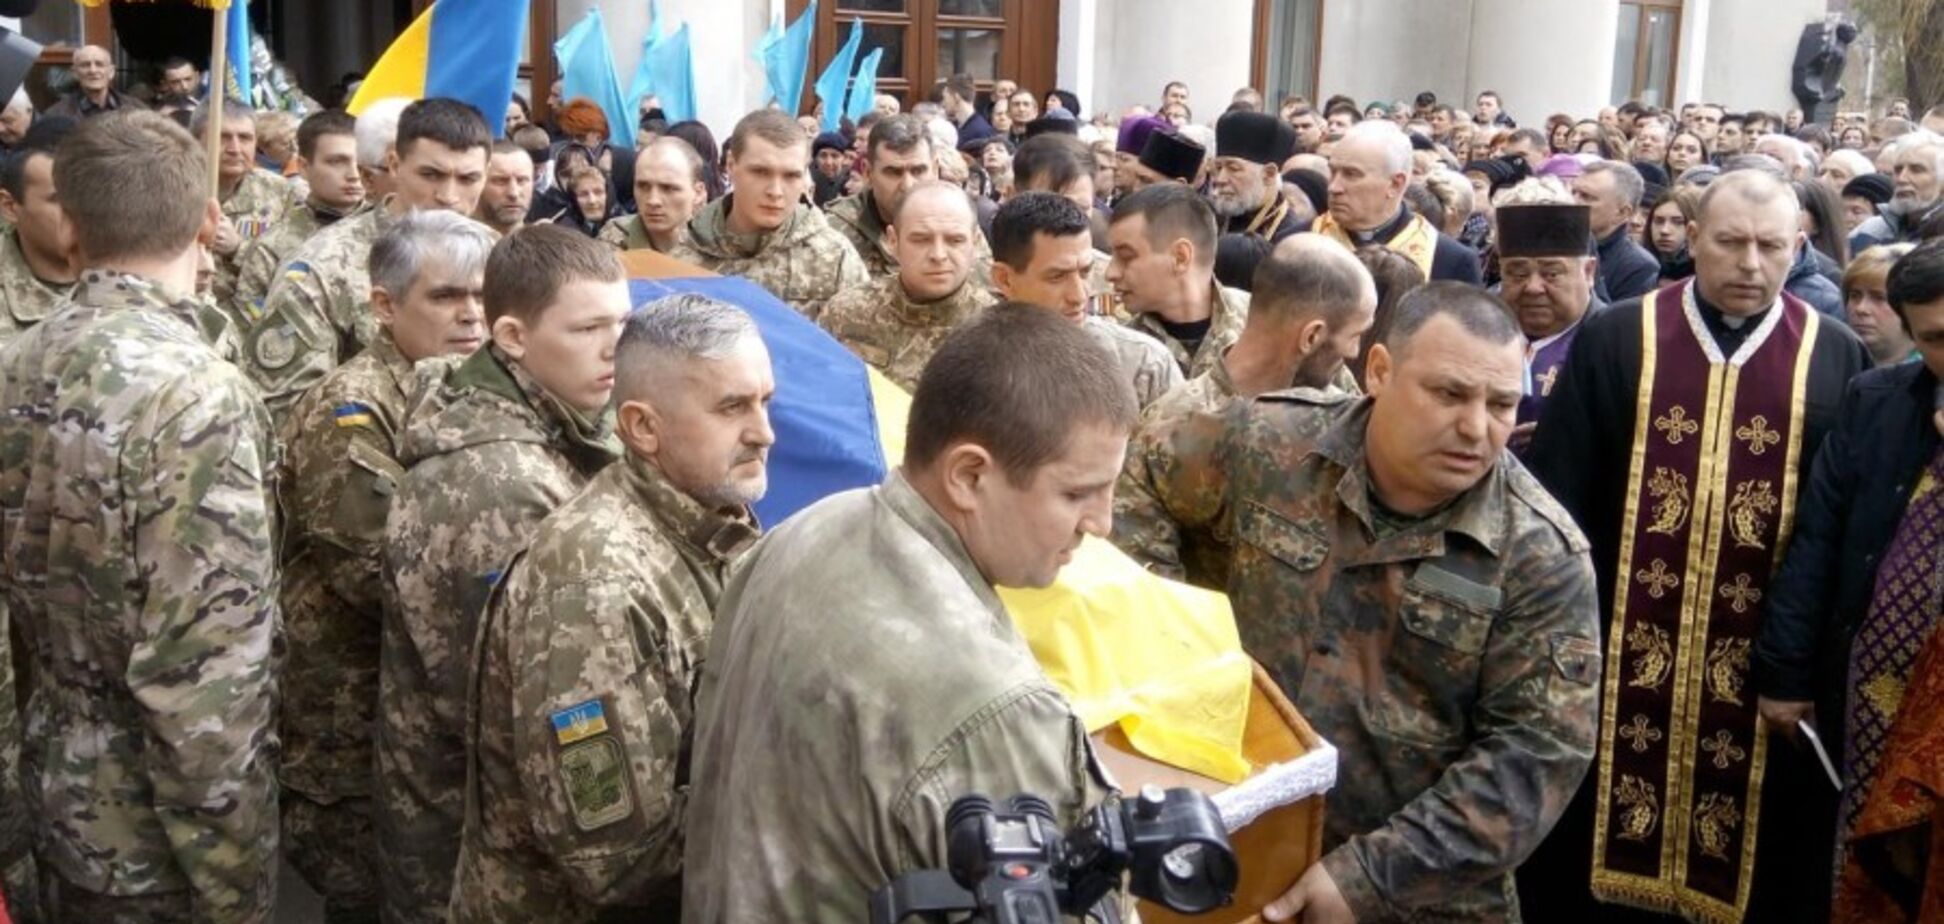 На Прикарпатье похоронили 19-летнего бойца ВСУ: фото и подробности